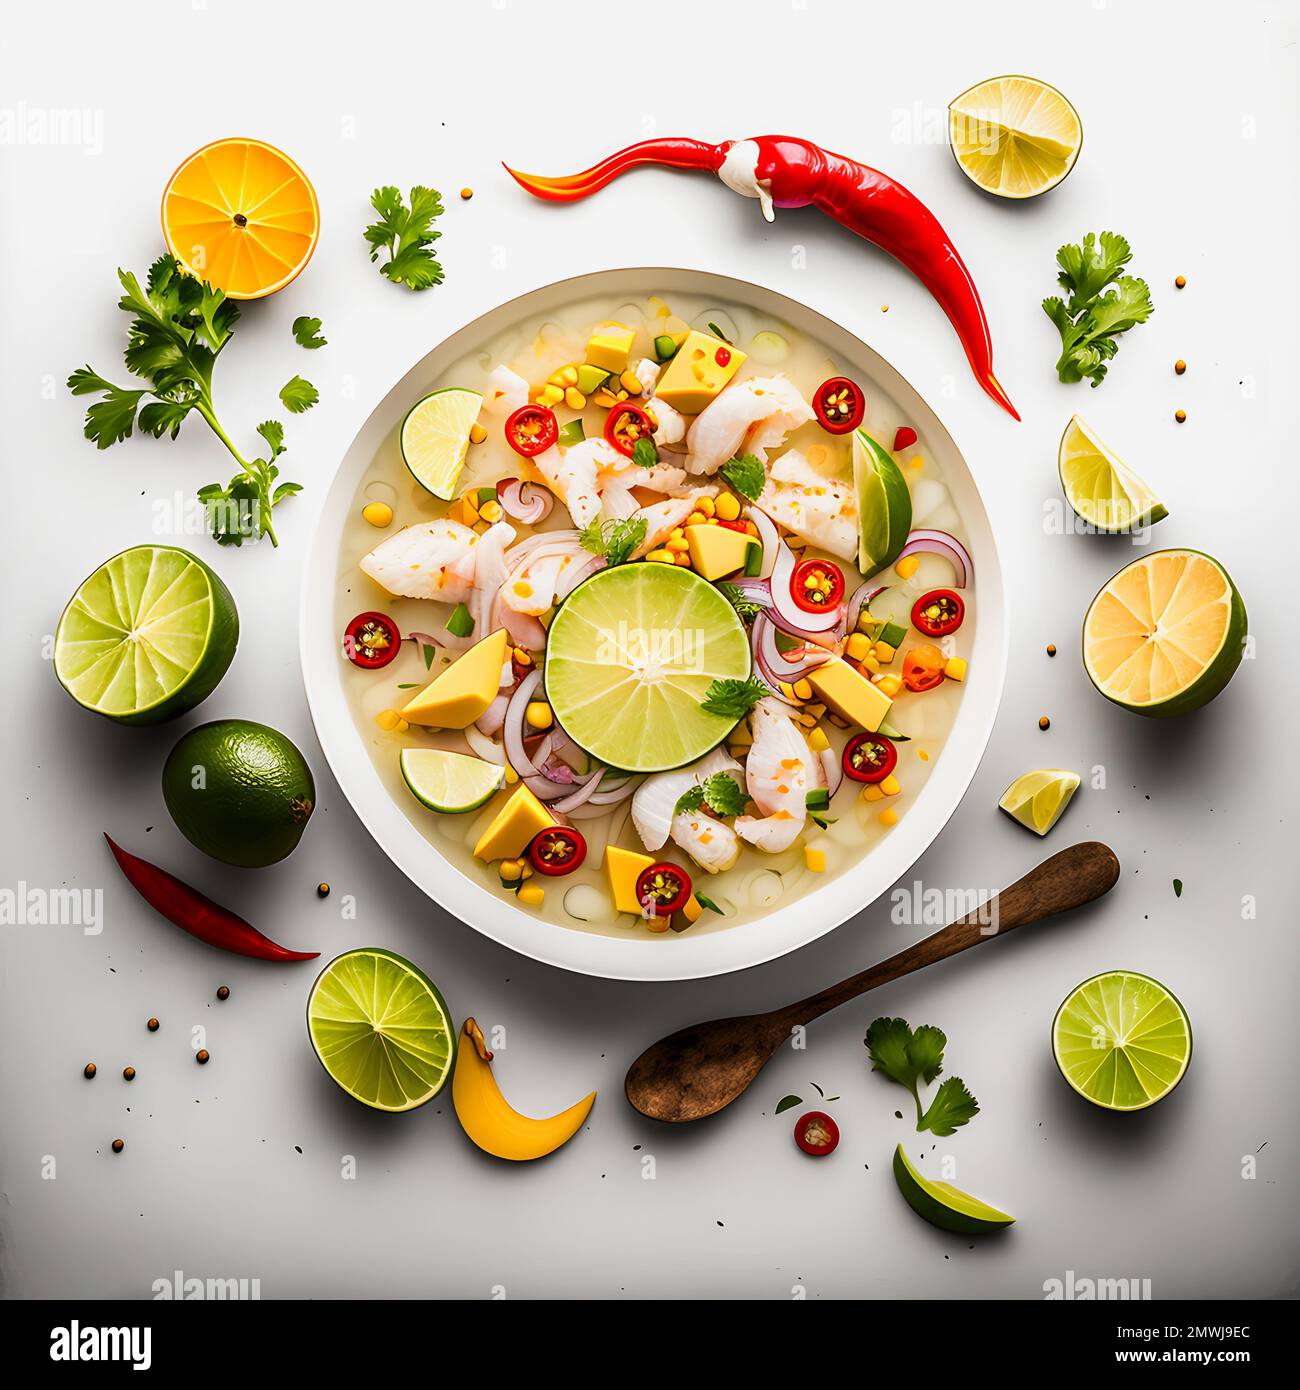 Stupendo Ceviche su sfondo bianco cibo fotografia. Metti in risalto i sapori vibranti del piatto amato dell'America Latina in un ambiente minimalista e sofisticato Foto Stock